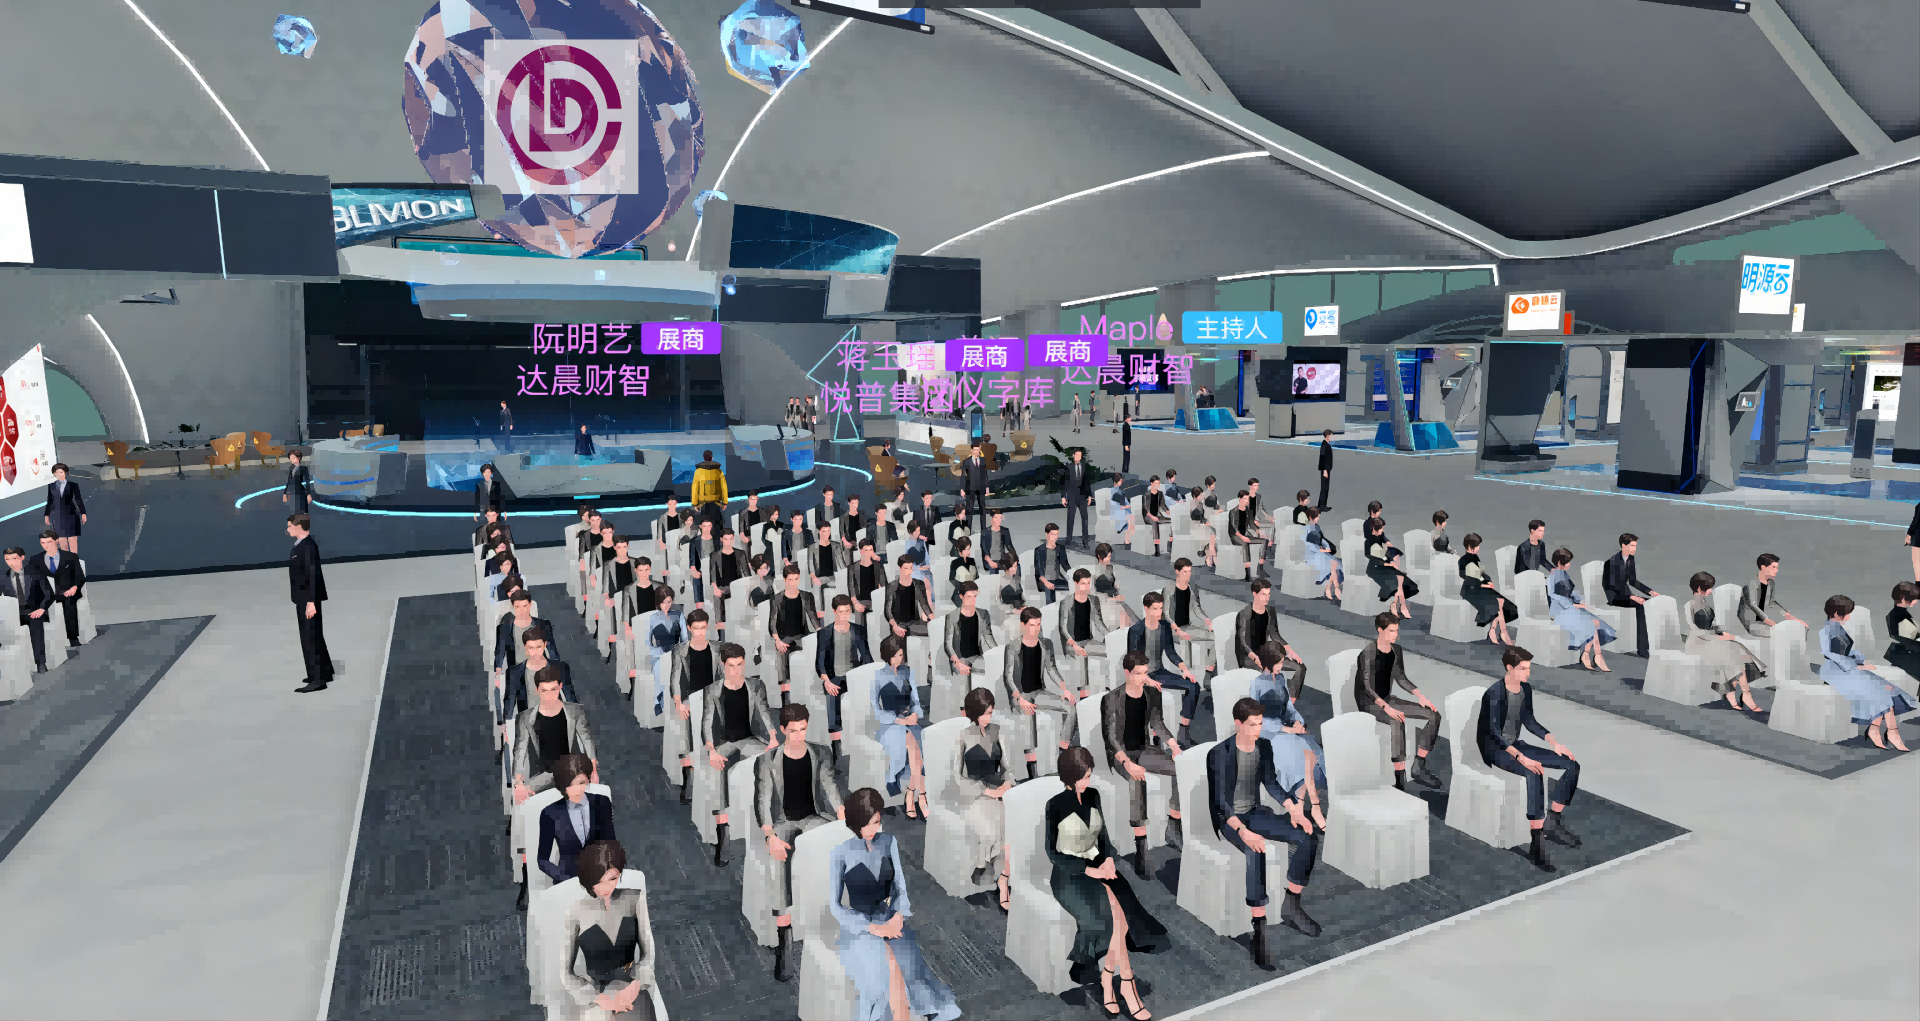 这是一张虚拟现实场景图，展示众多人物坐在大厅内，前方有大屏幕，环境现代化，可能是数字会议或展览。